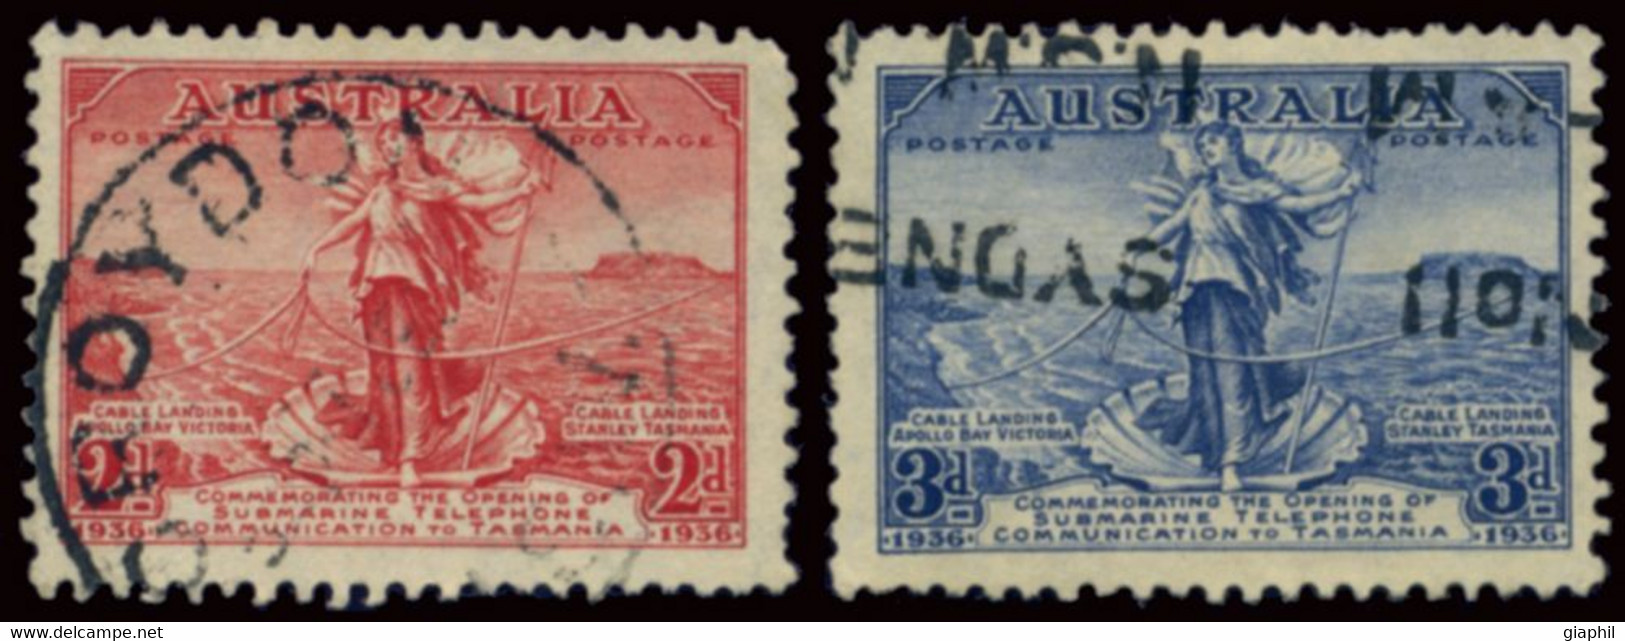 AUSTRALIA 1936 COMPLETE SET (SG 159-160) USED - Used Stamps